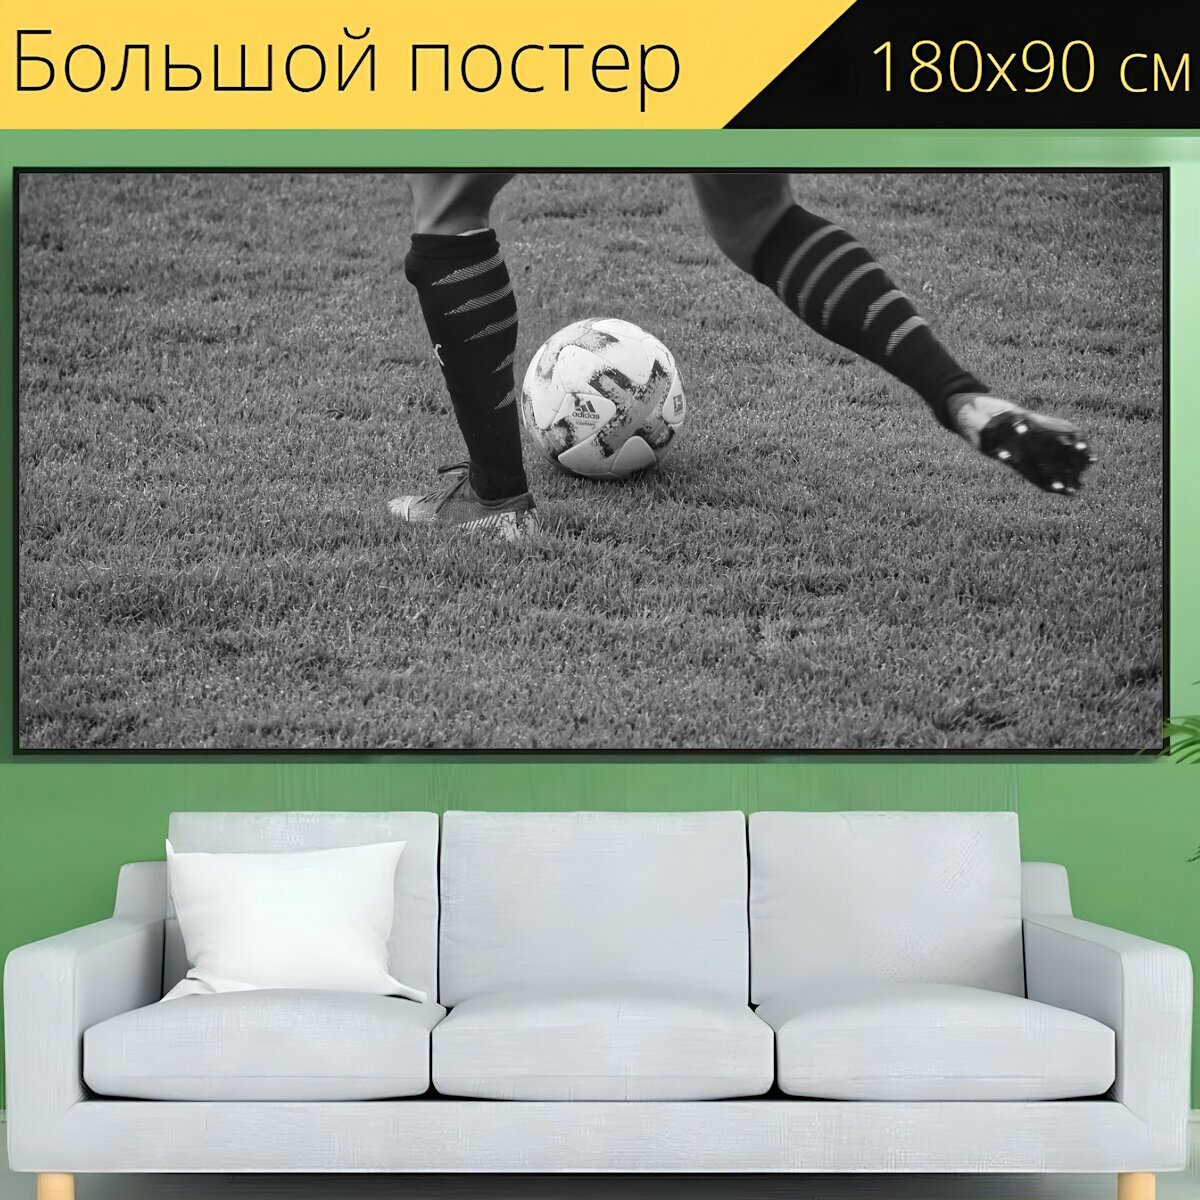 Большой постер "Футбол, мяч, футбольный" 180 x 90 см. для интерьера